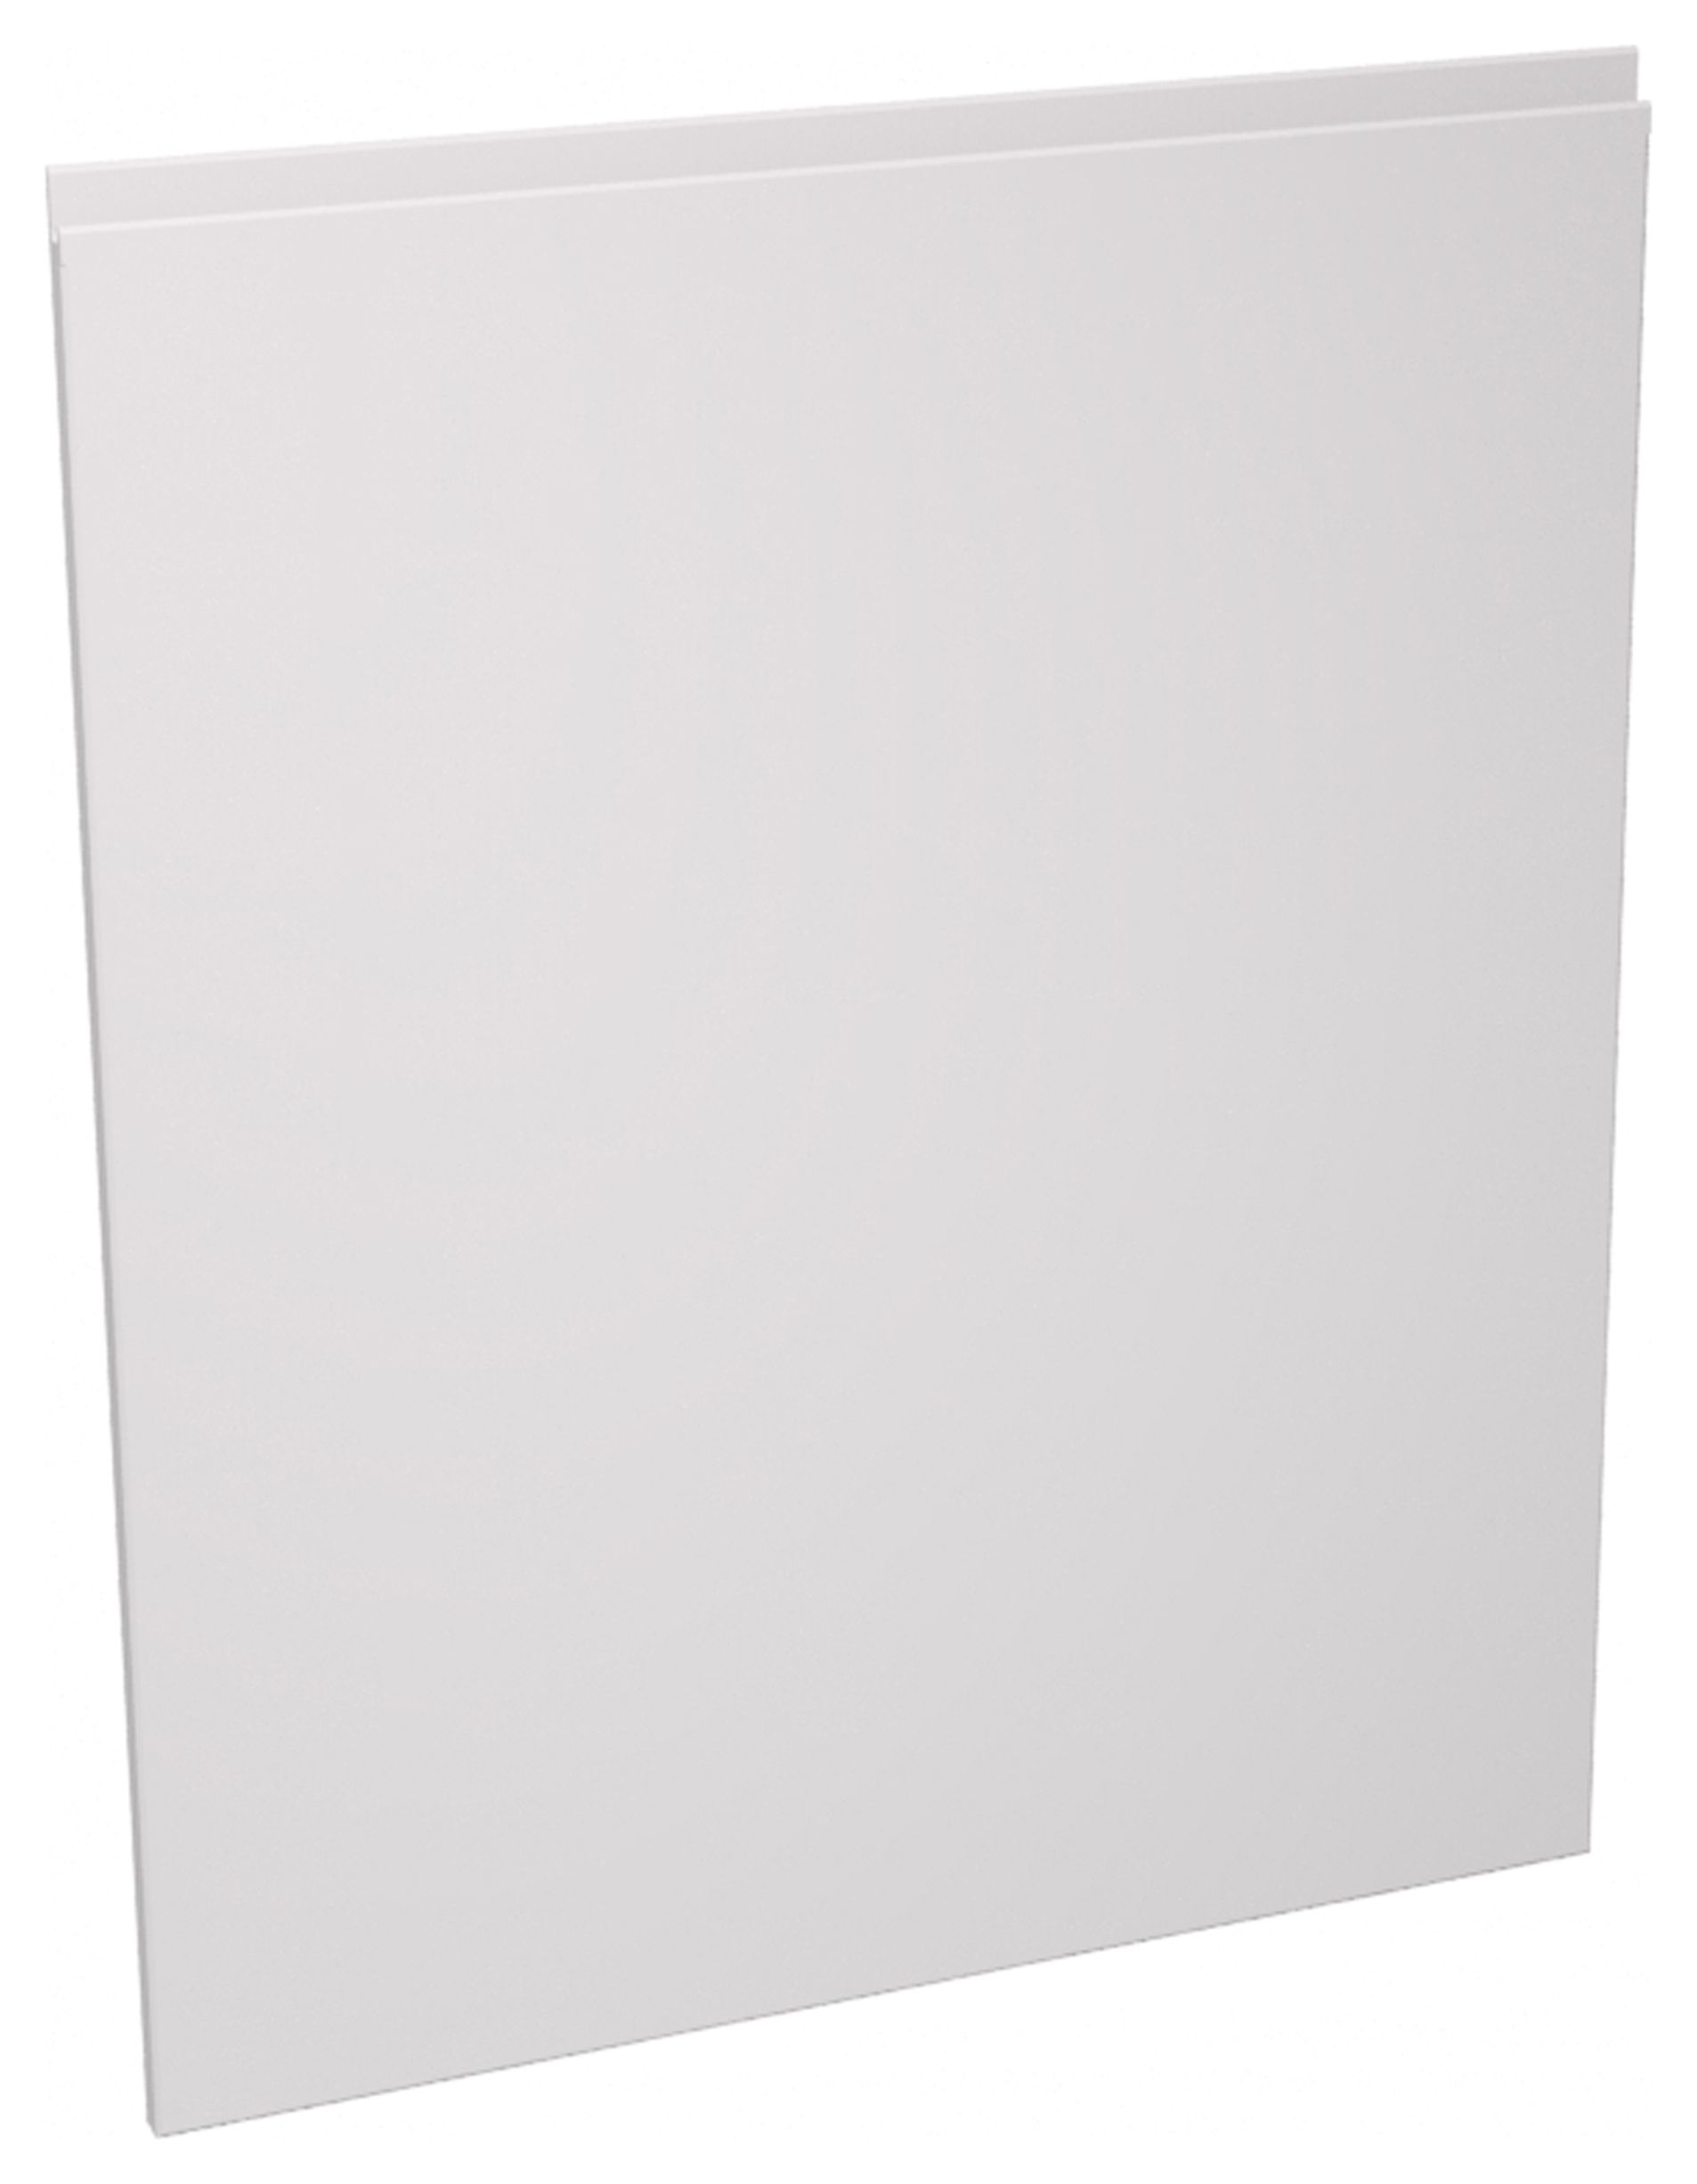 Camden White 600mm Dishwasher Door